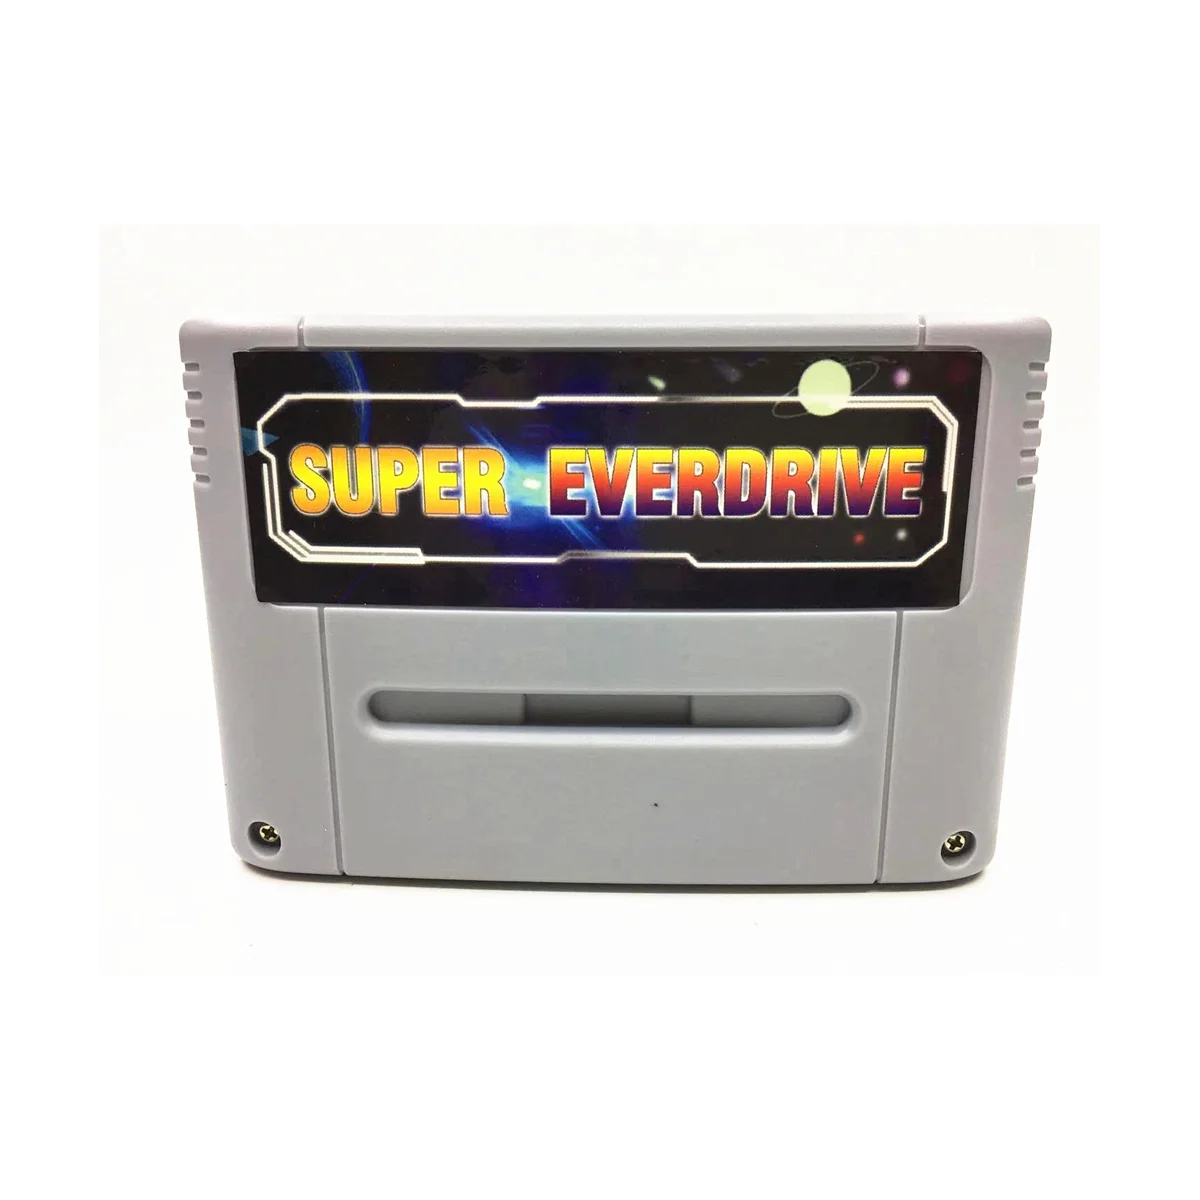 

Супер 800 в 1 Pro Remix игровая карта для 16-битной игровой консоли SNES Супер EverDrive картридж, серый